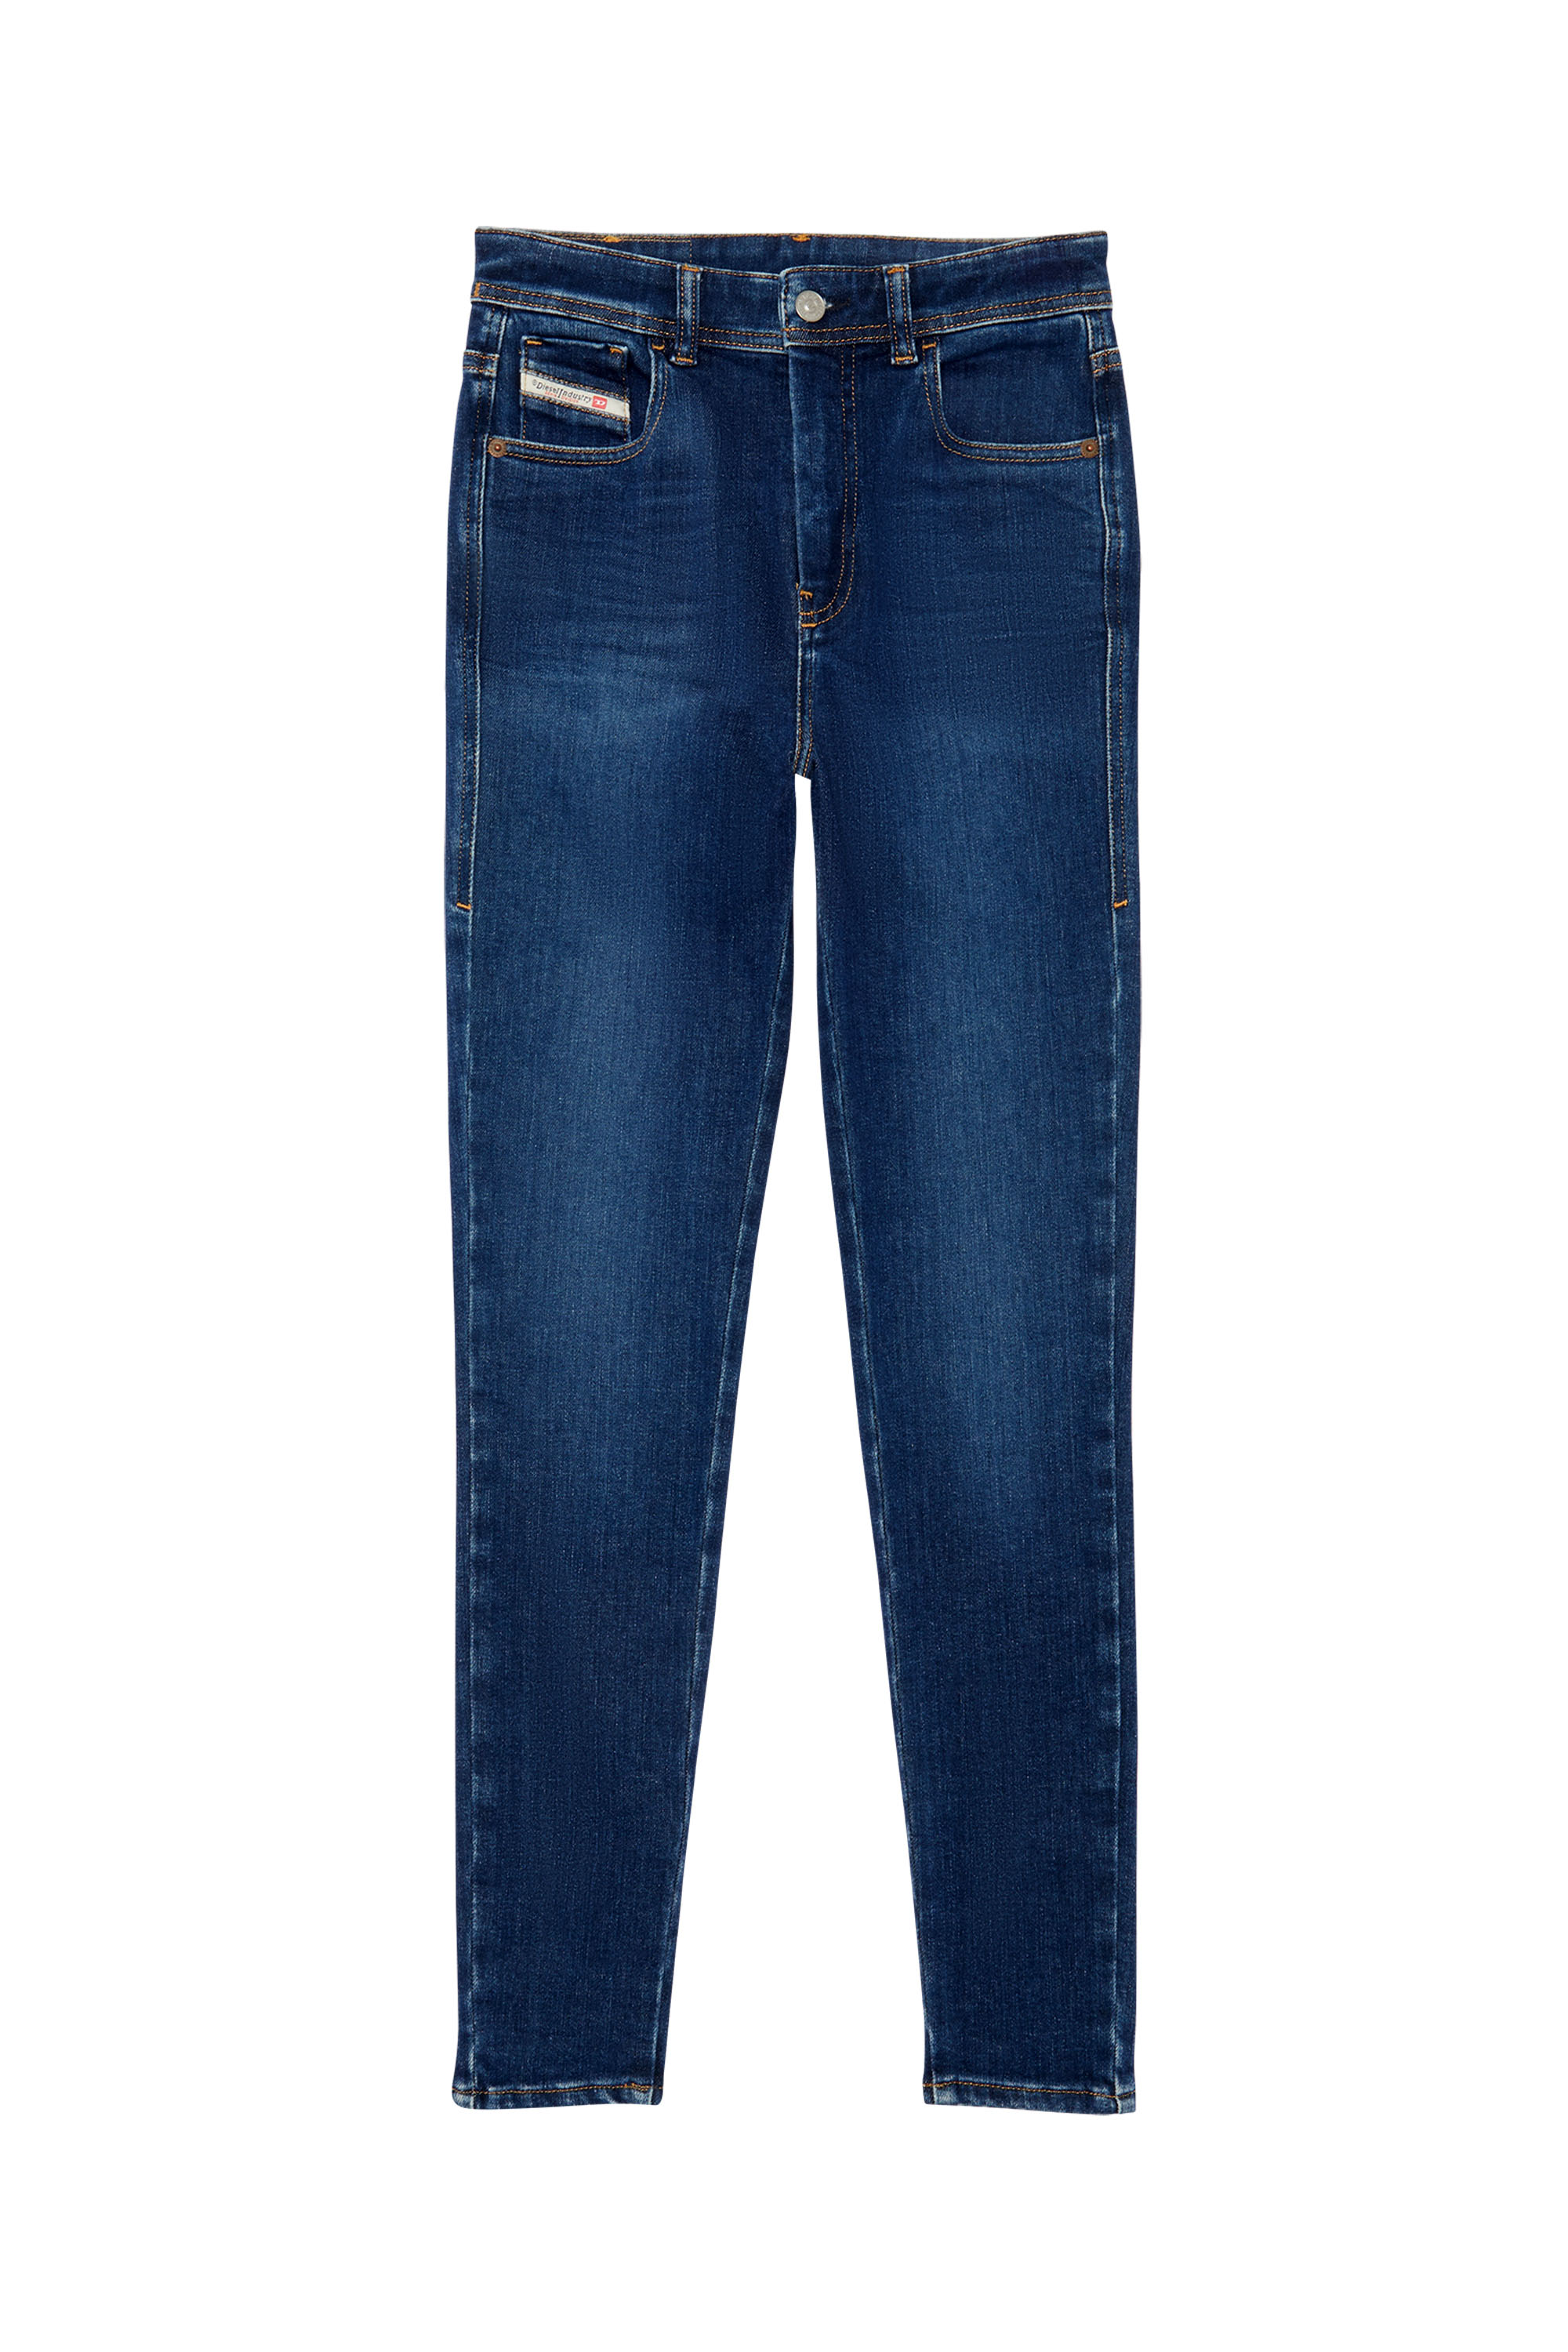 Super skinny Jeans 1984 Slandy-High 09C19, Blu Scuro - Jeans